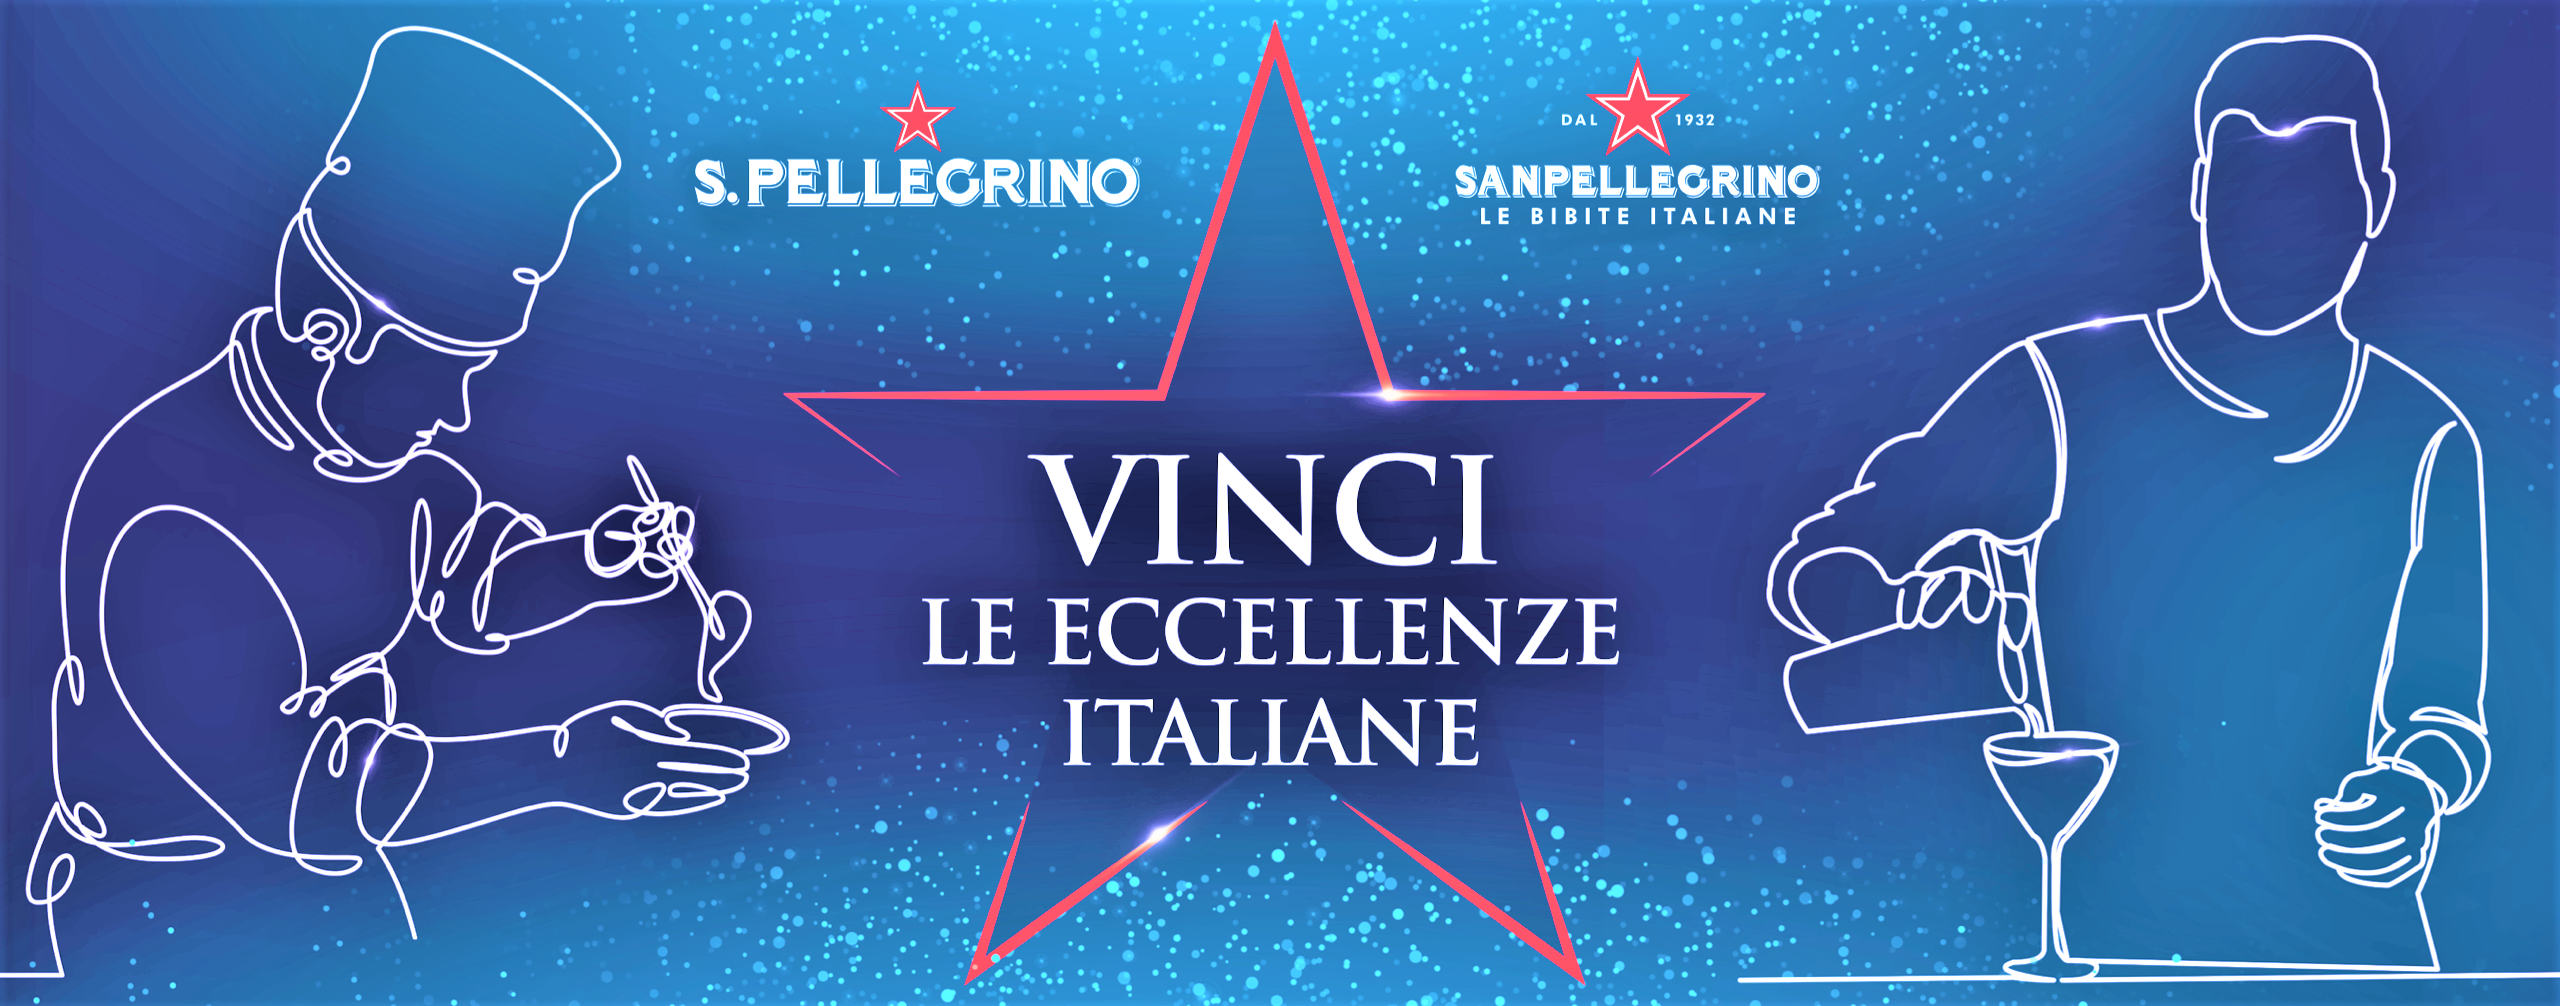 “Vinci le eccellenze italiane” con Acqua S.Pellegrino e Bibite Sanpellegrino